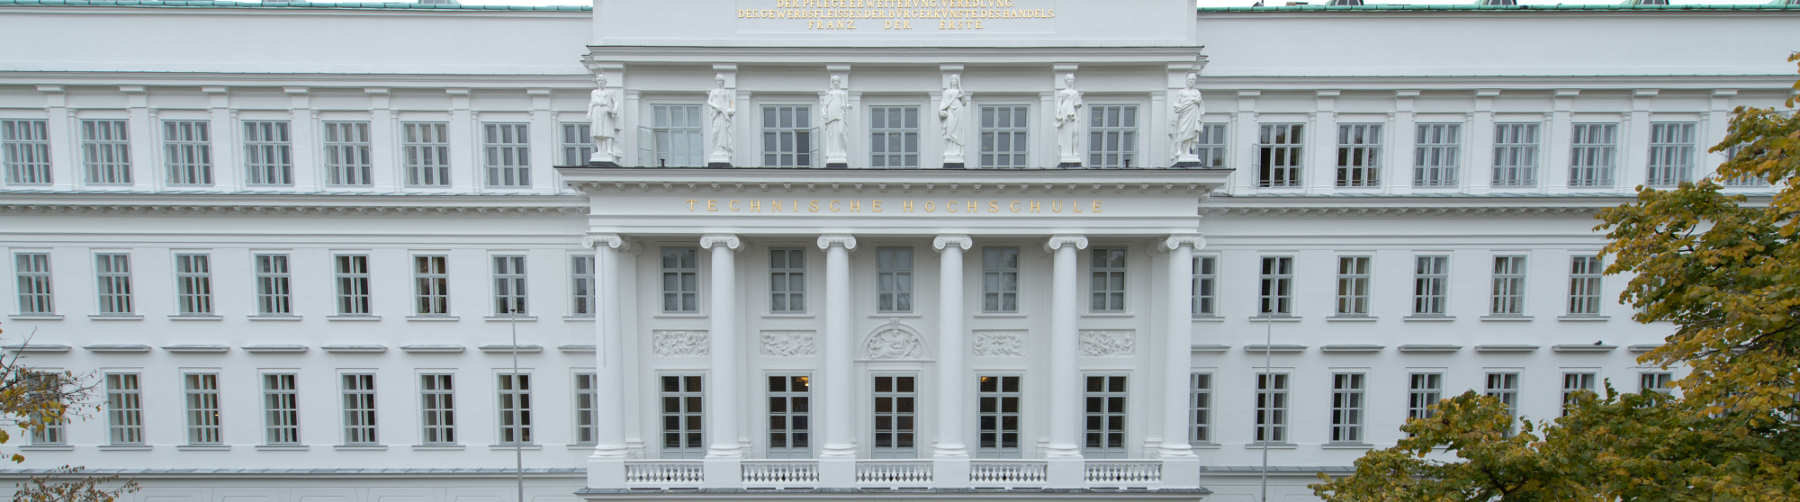 Blick auf das Hauptgebäude der TU Wien